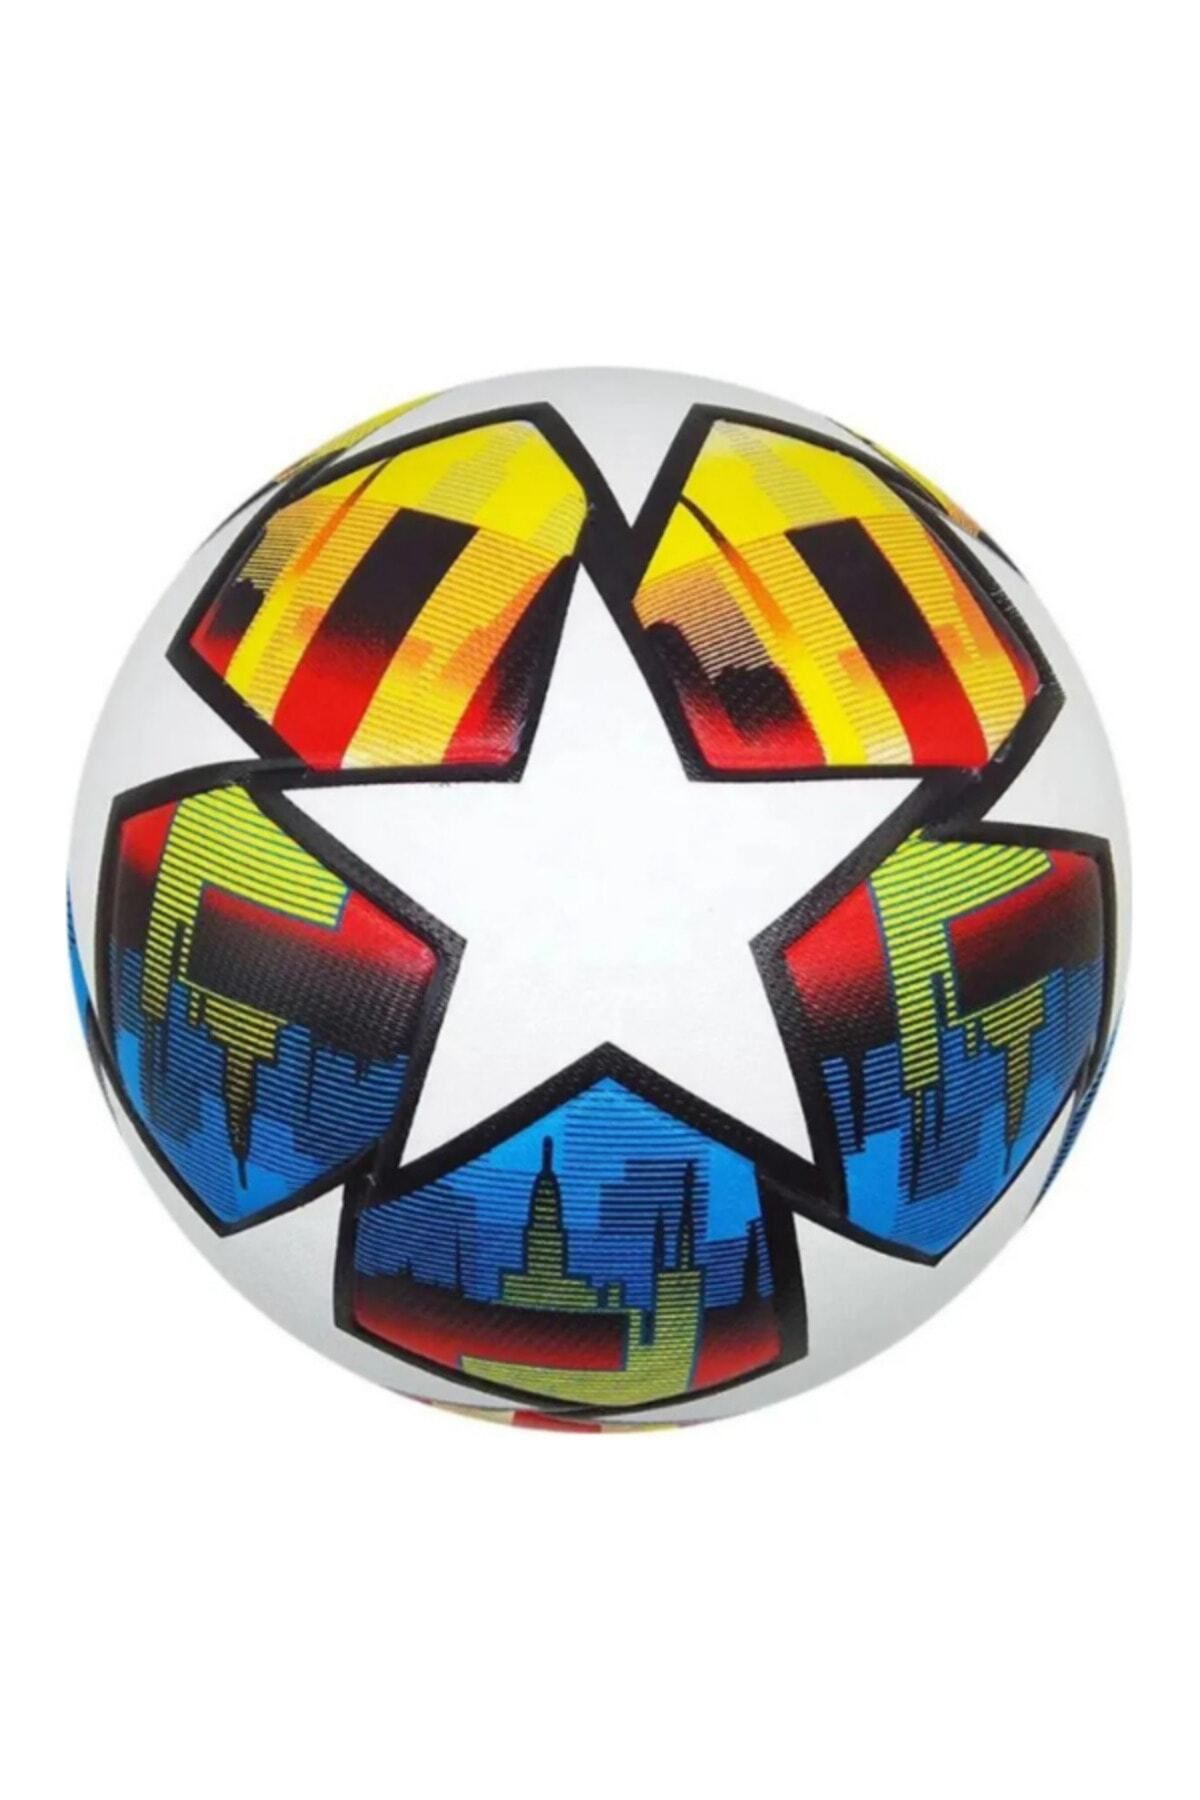 woodhub Renkli Şampiyonlar Ligi Tasarımı Dikişli Futbol Topu, 5 Numara "Şişmiş Olarak Gönderilir."